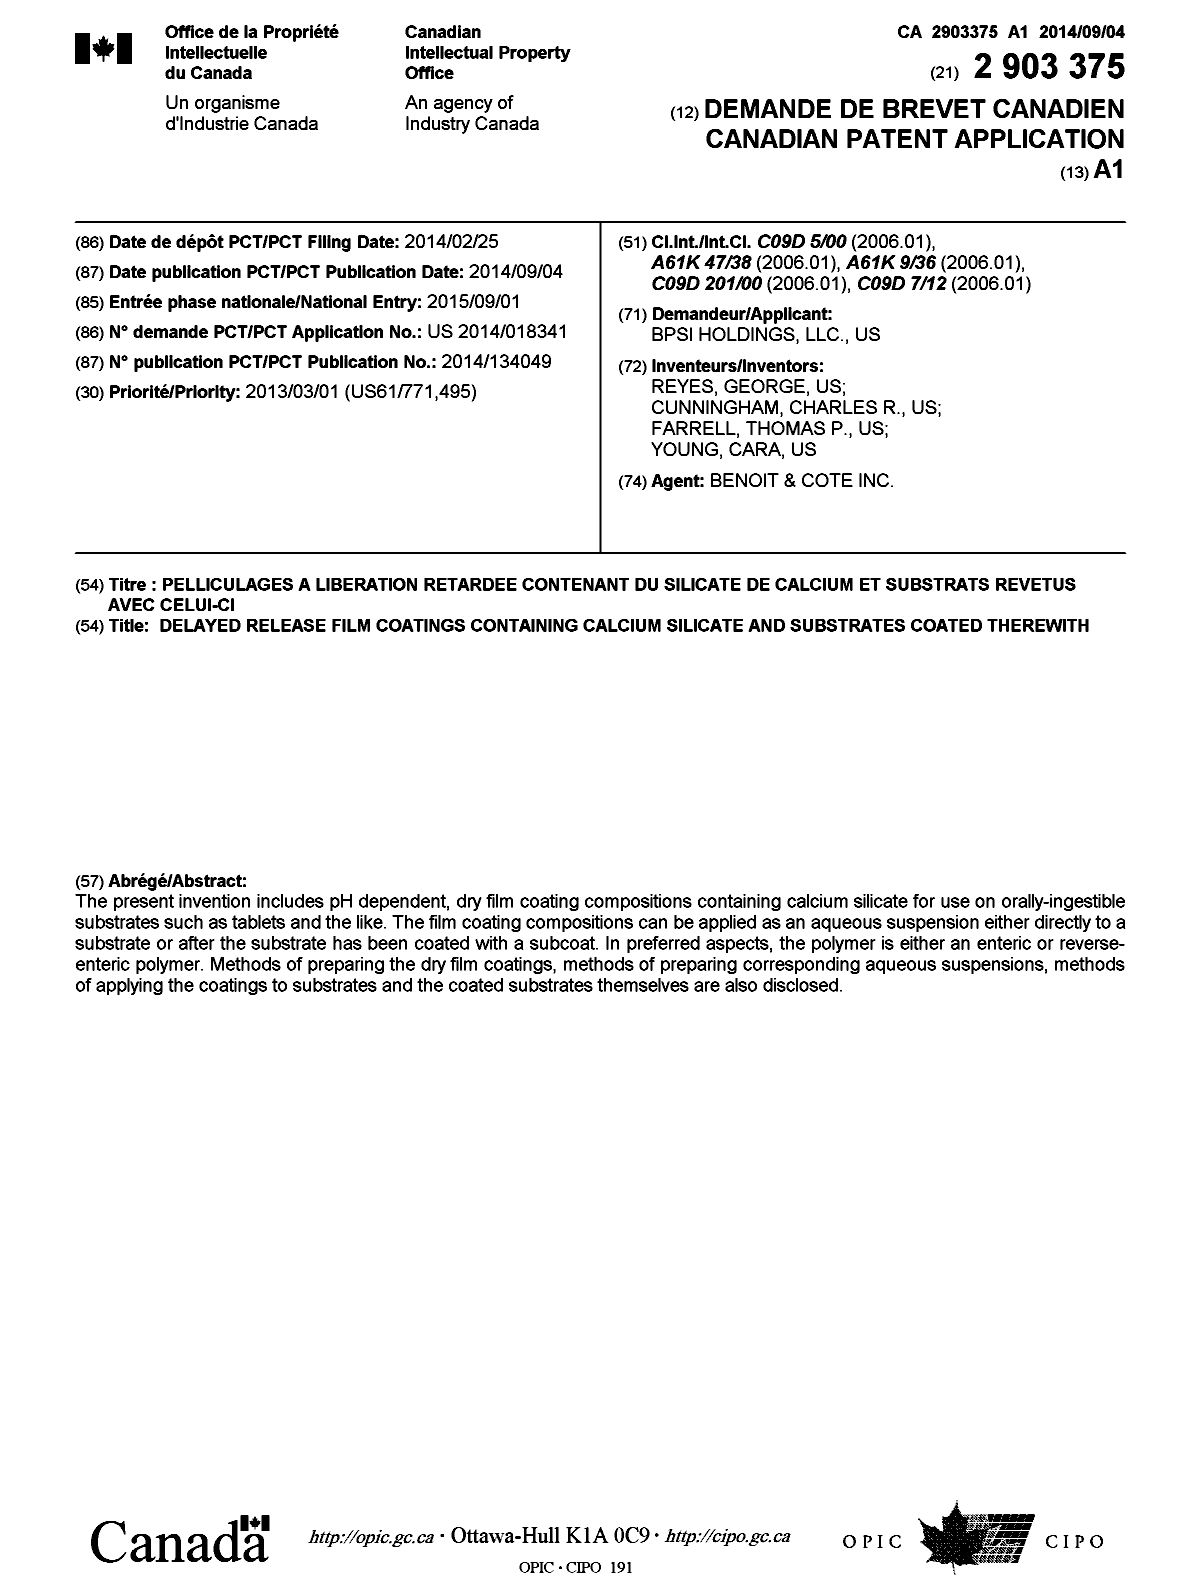 Document de brevet canadien 2903375. Page couverture 20141230. Image 1 de 1